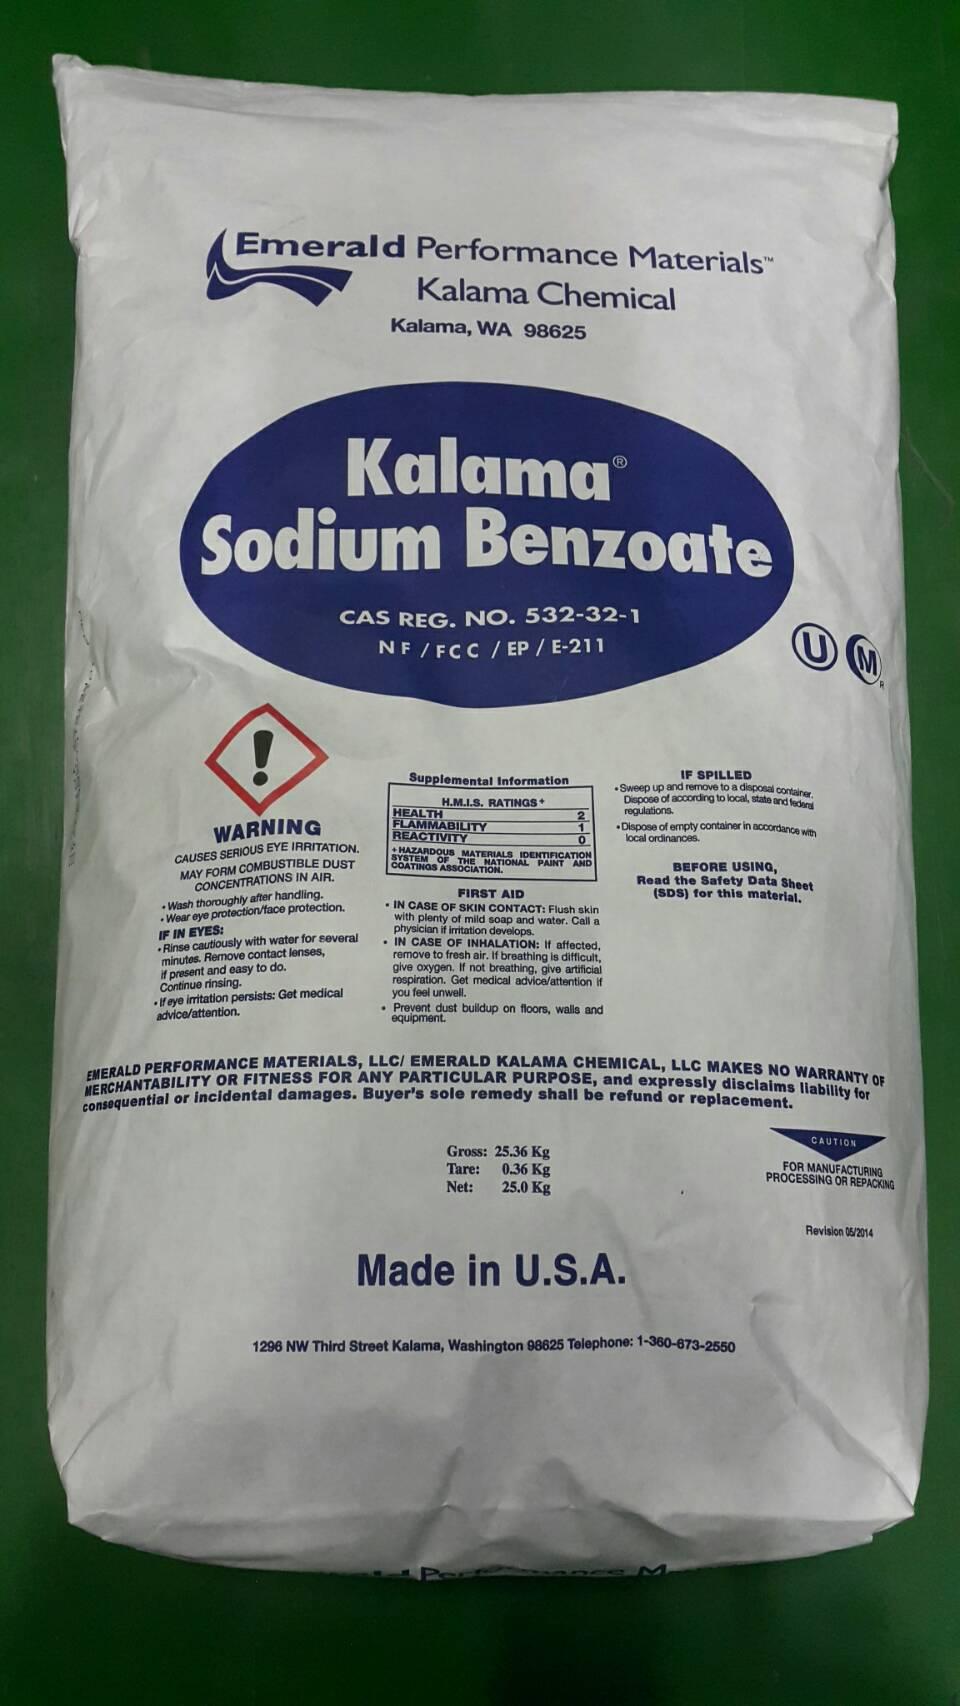 สารกันบูด (Sodium benzoate KALAMA USA.) โซเดียม เบนโซเอท อเมริกา ขนาดบรรจุ 25 กก.,สารกันบูด, โซเดียม เบนโซเอท, sodium benzoate, สารกันเสีย, สารกันบูด ฮอลแลนด์, purox, สารกันบูดจีน ถุงขาว, สารกันบูดอู่ฮั่น,,KALAMA USA.,Chemicals/Preservatives